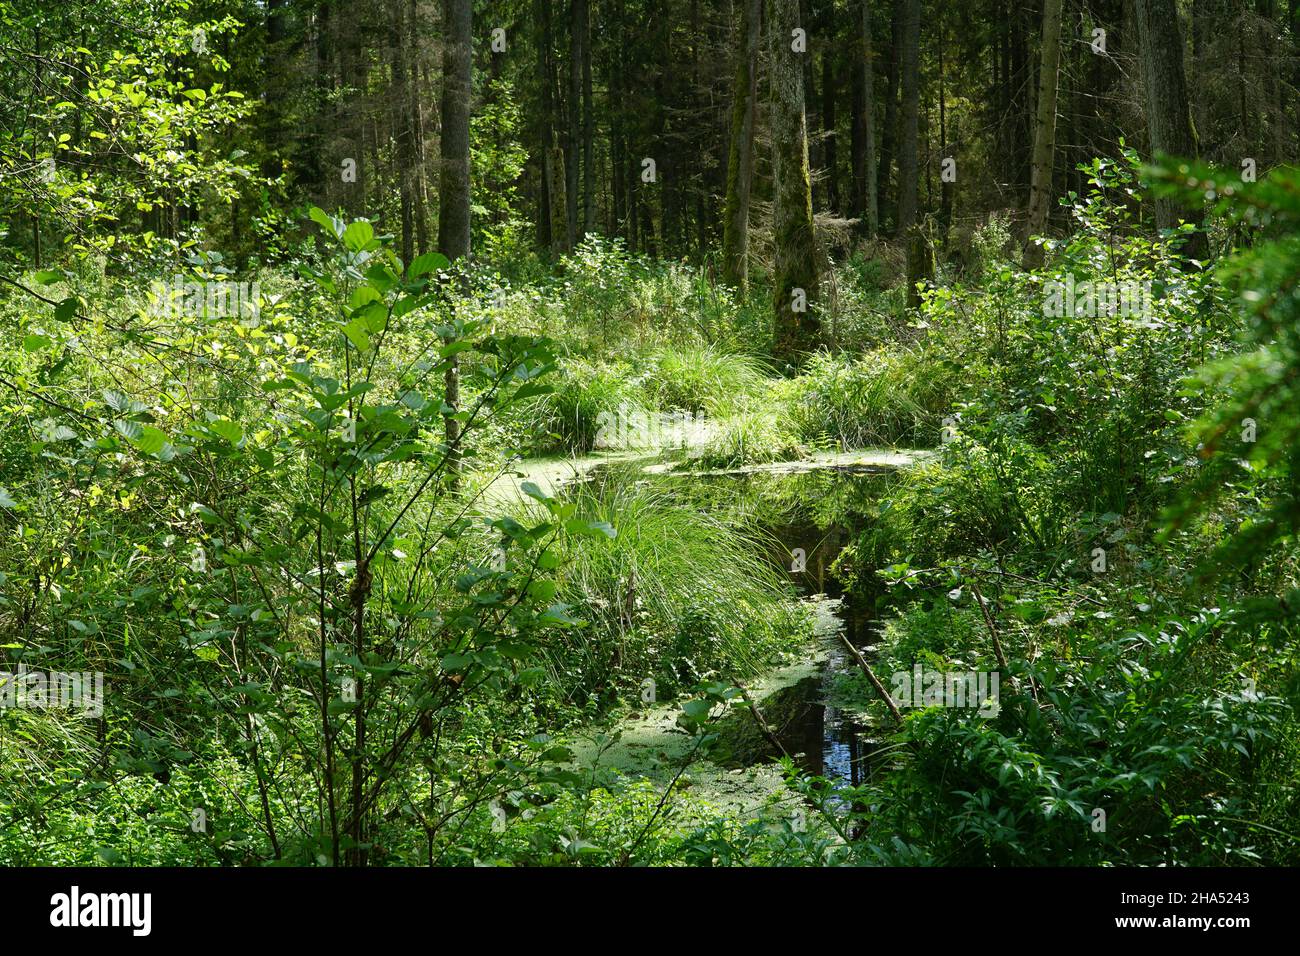 En forêt profonde.Forêt naturelle sauvage dense arrière-plan naturel.Forêt de Knyszyn, Pologne, Europe. Banque D'Images